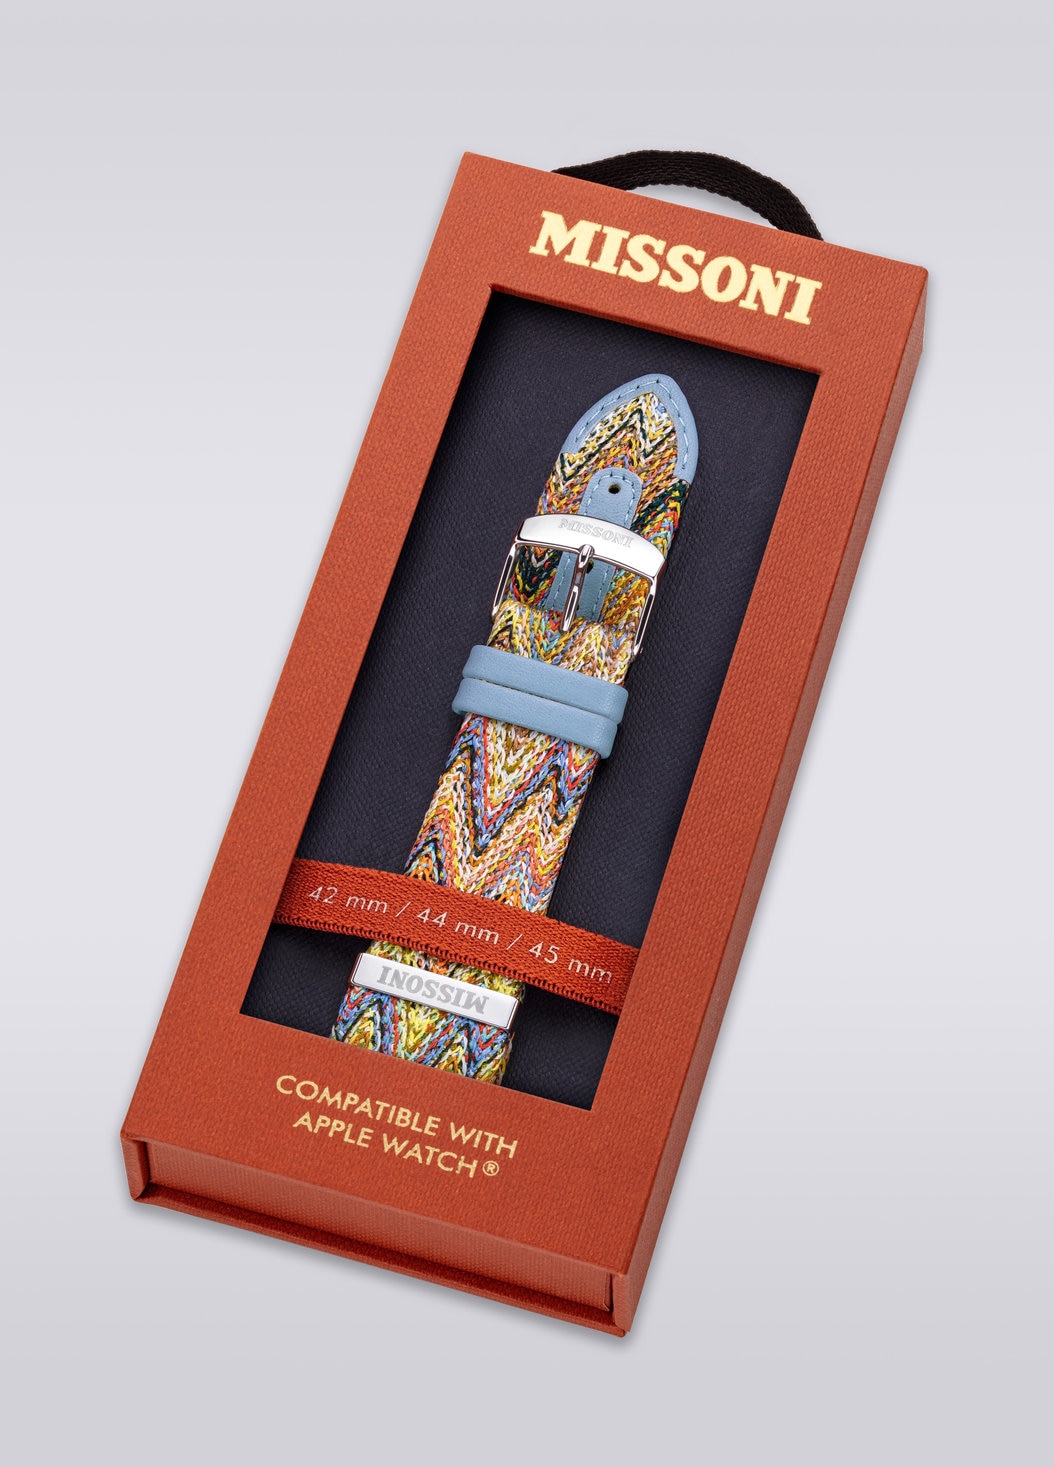 Missoni Fabric 24 mm mit Apple Watch kompatibles Armband, Mehrfarbig  - 8053147046273 - 4